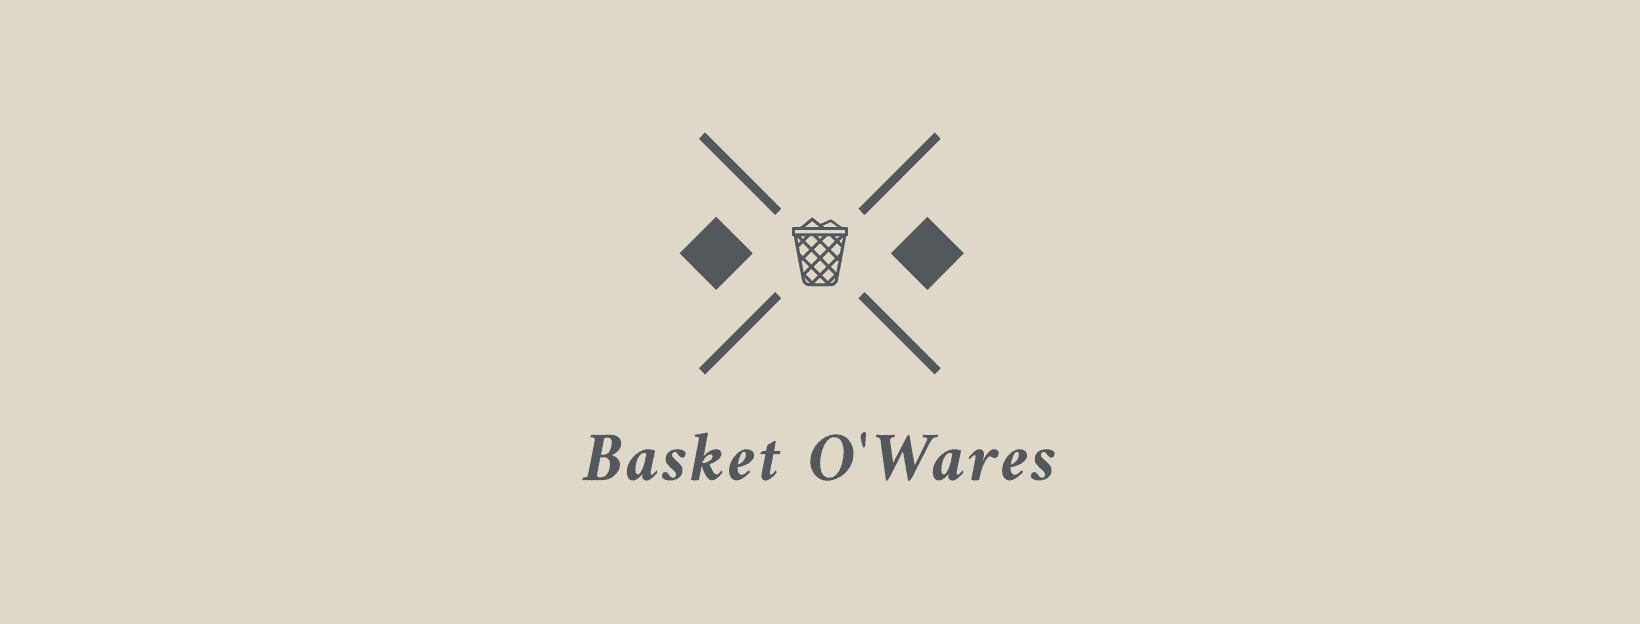 Basket O'Wares